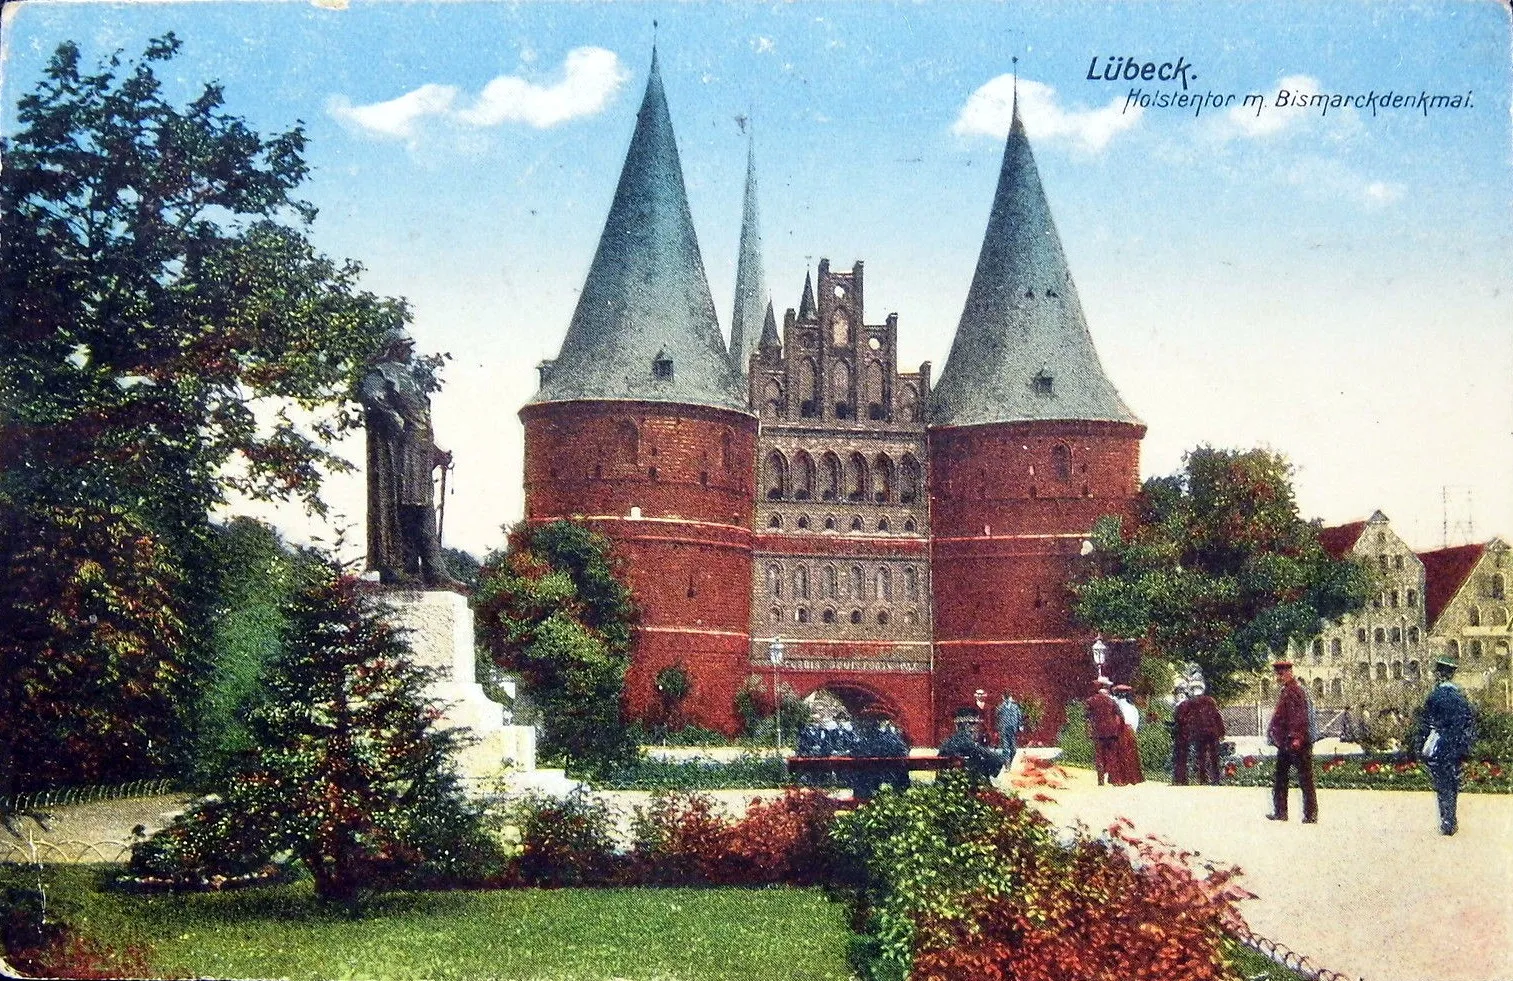 Photo showing: Lübeck - Holstentor mit Bismarckdenkmal.